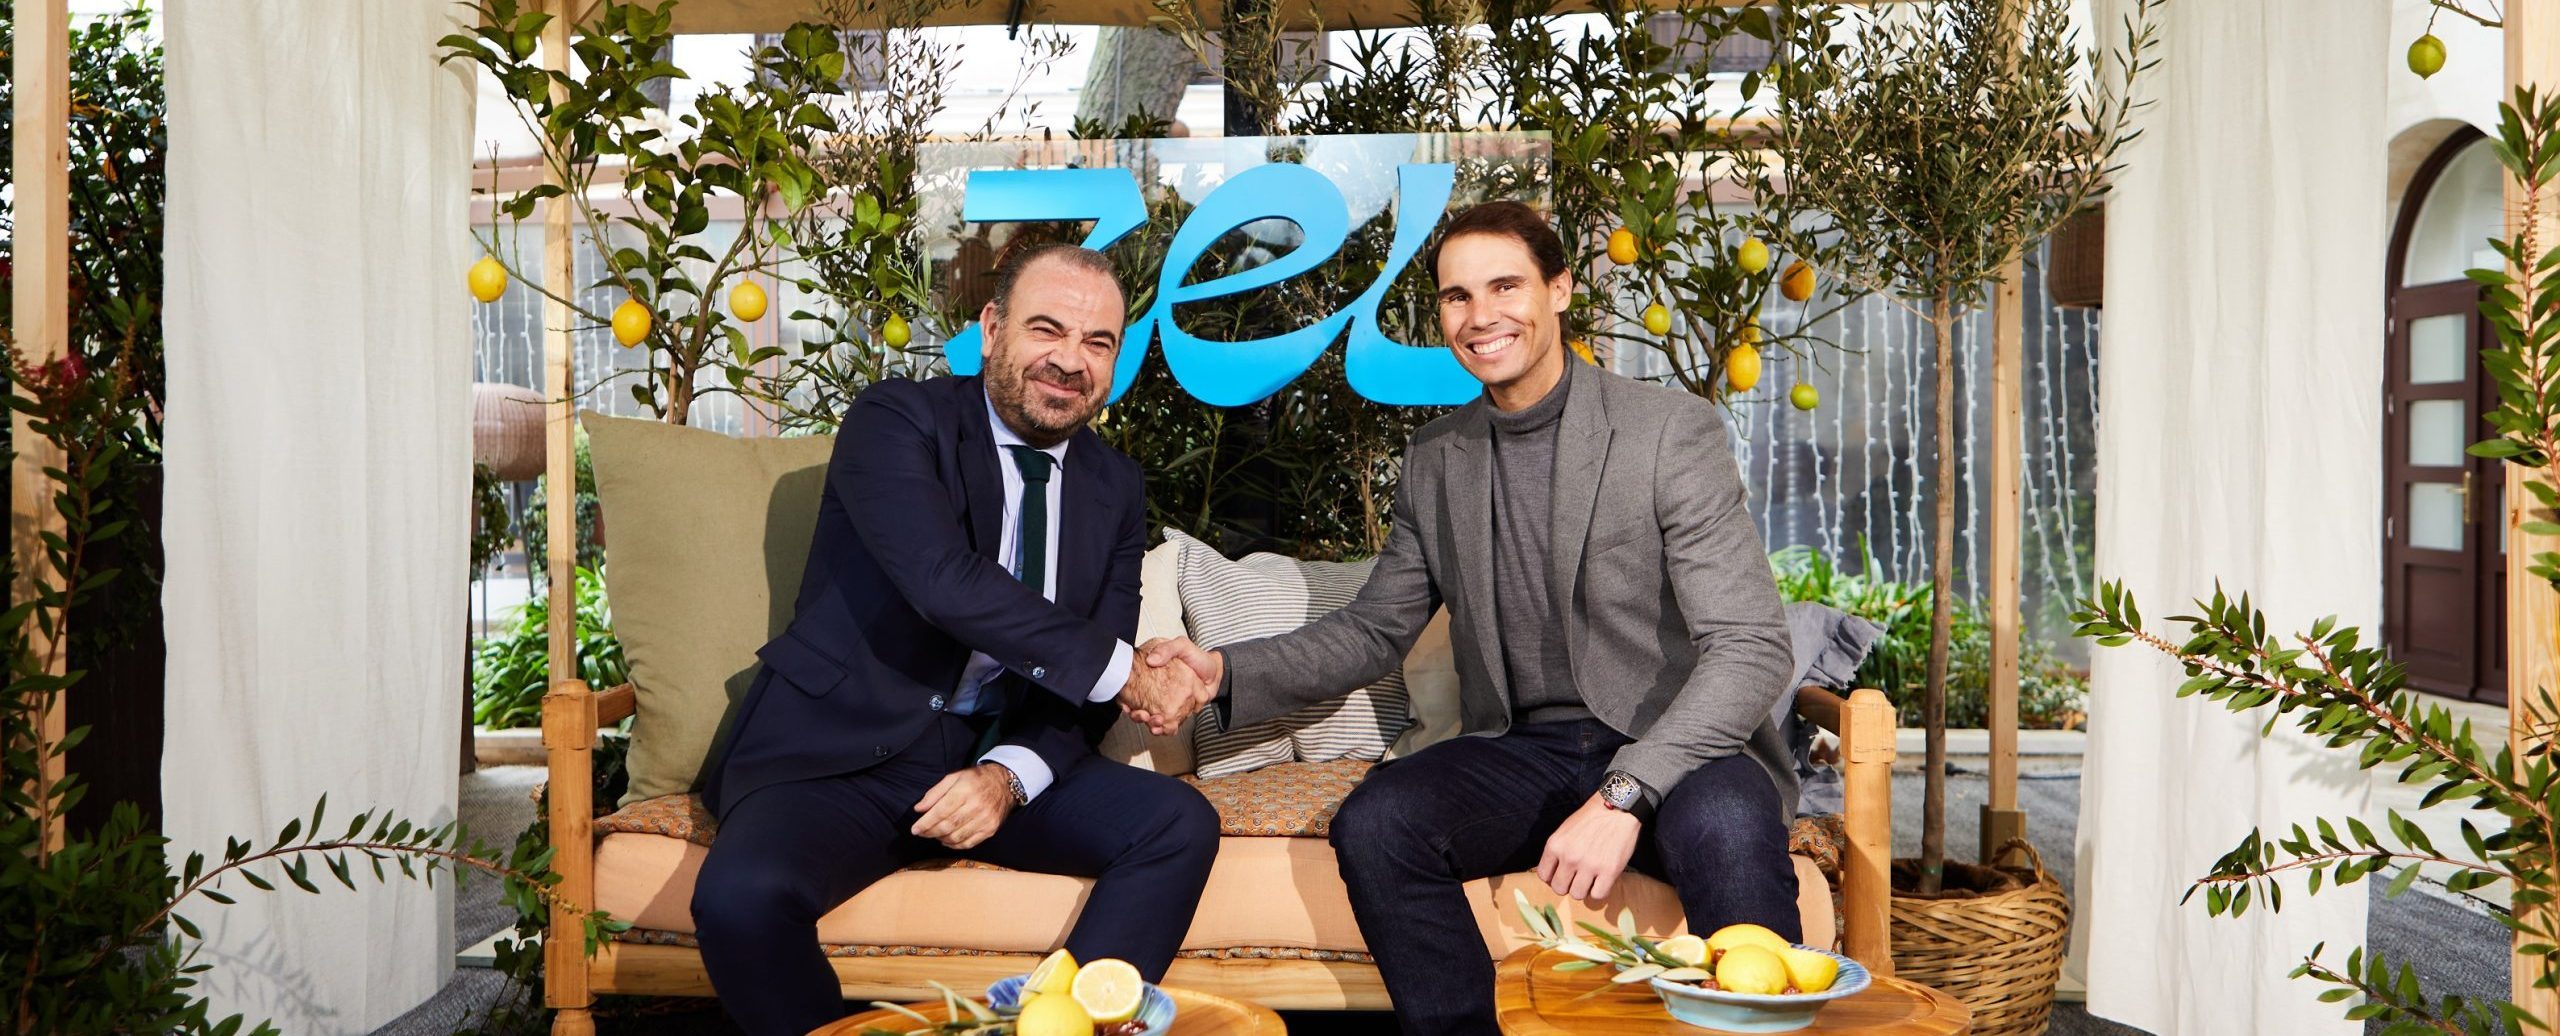 Meliá Hotels International y Rafael Nadal presentan Zel, una nueva marca de hoteles